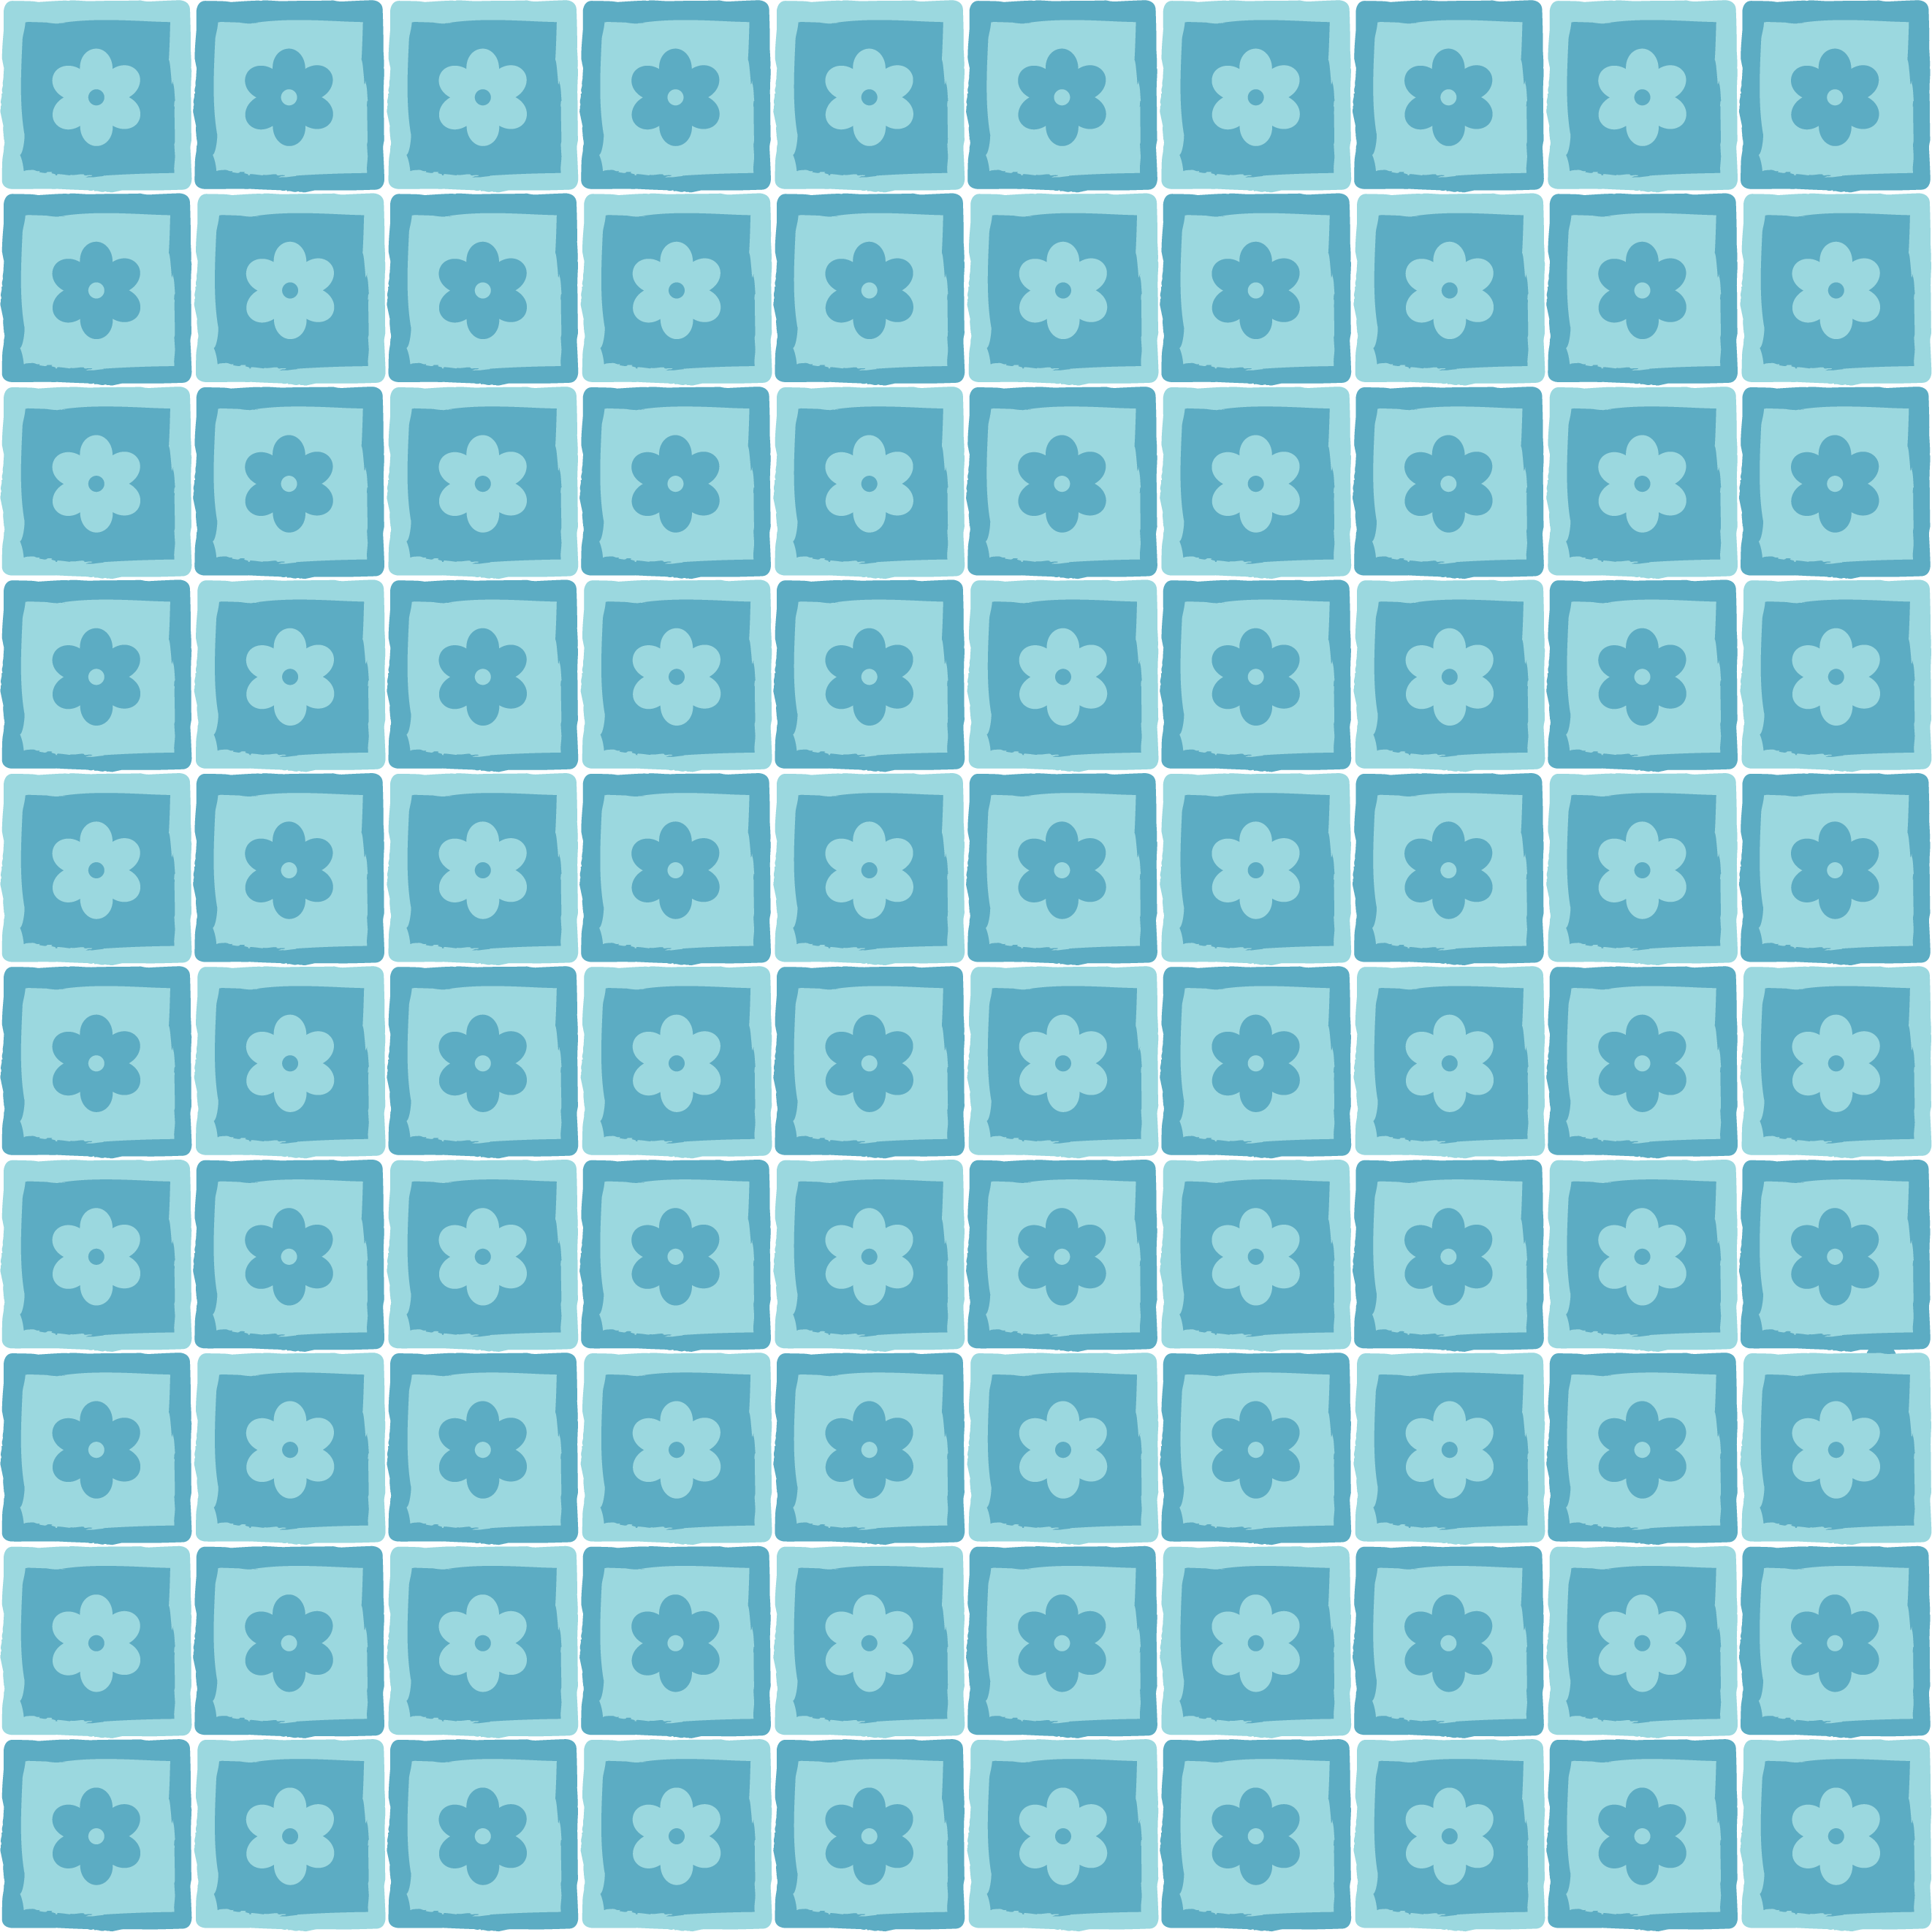 壁紙 背景イラスト 花の模様 柄 パターン No 084 青 水色 四角枠